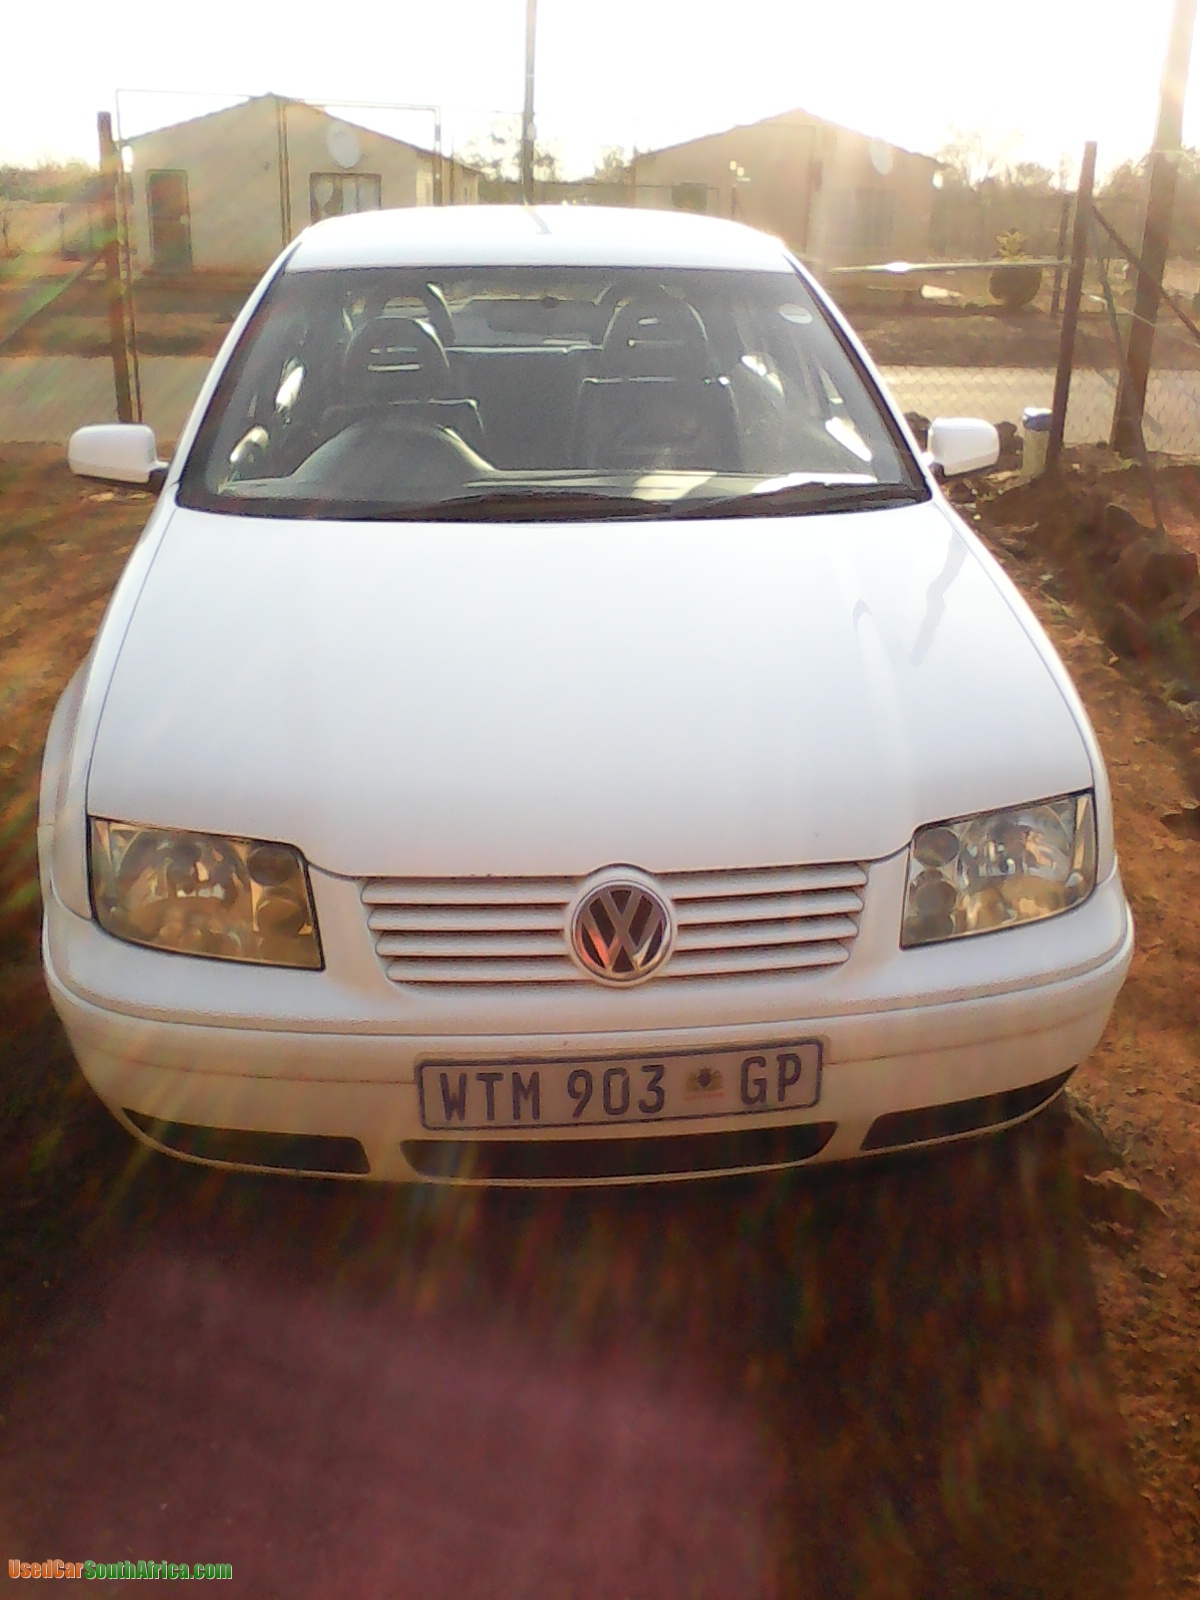 2000 Volkswagen Jetta 2.0 used car for sale in Pretoria ...